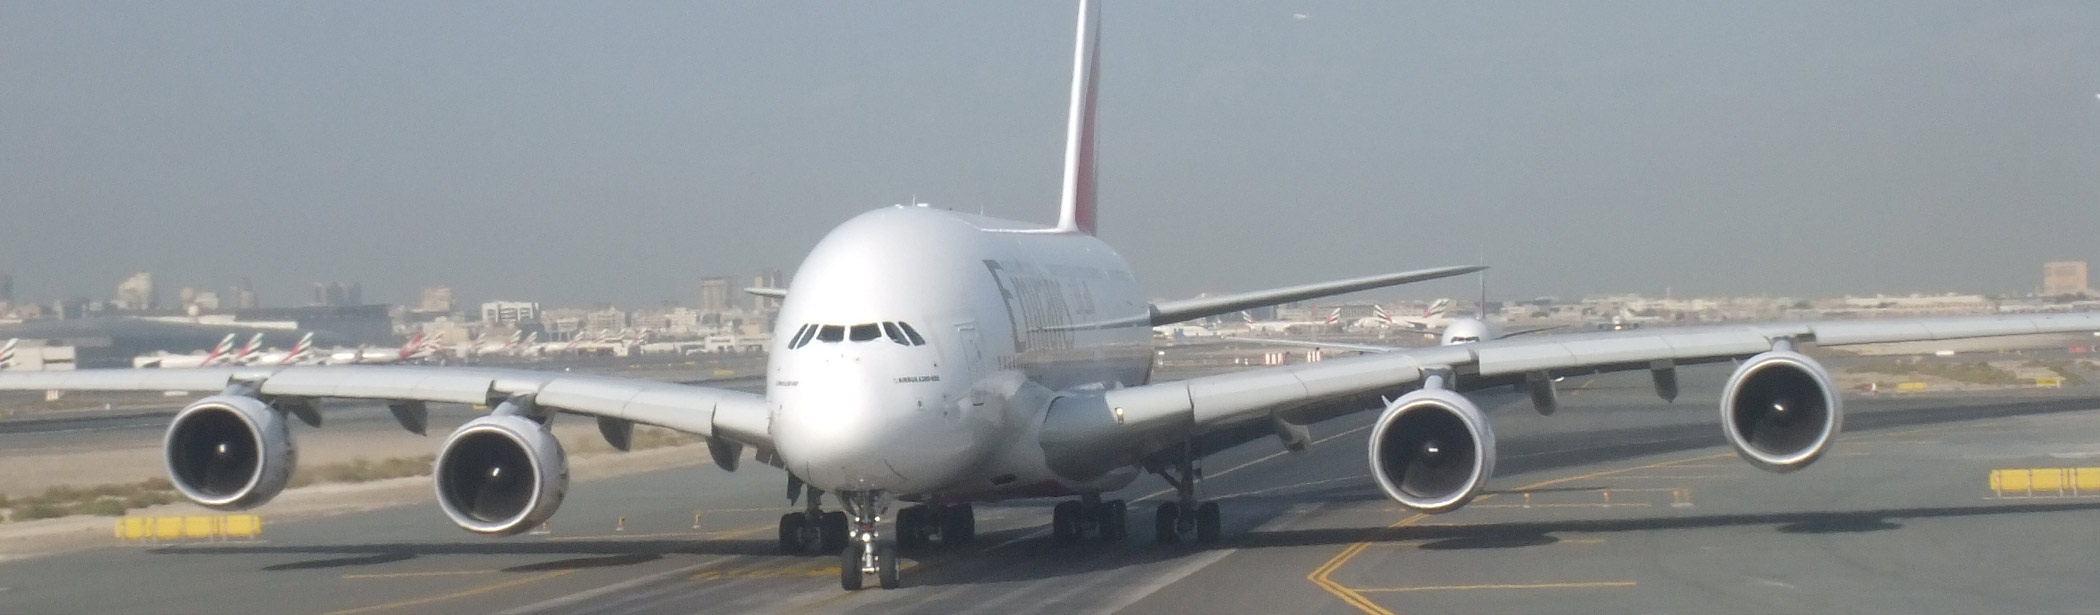 A380 auf der Rollbahn